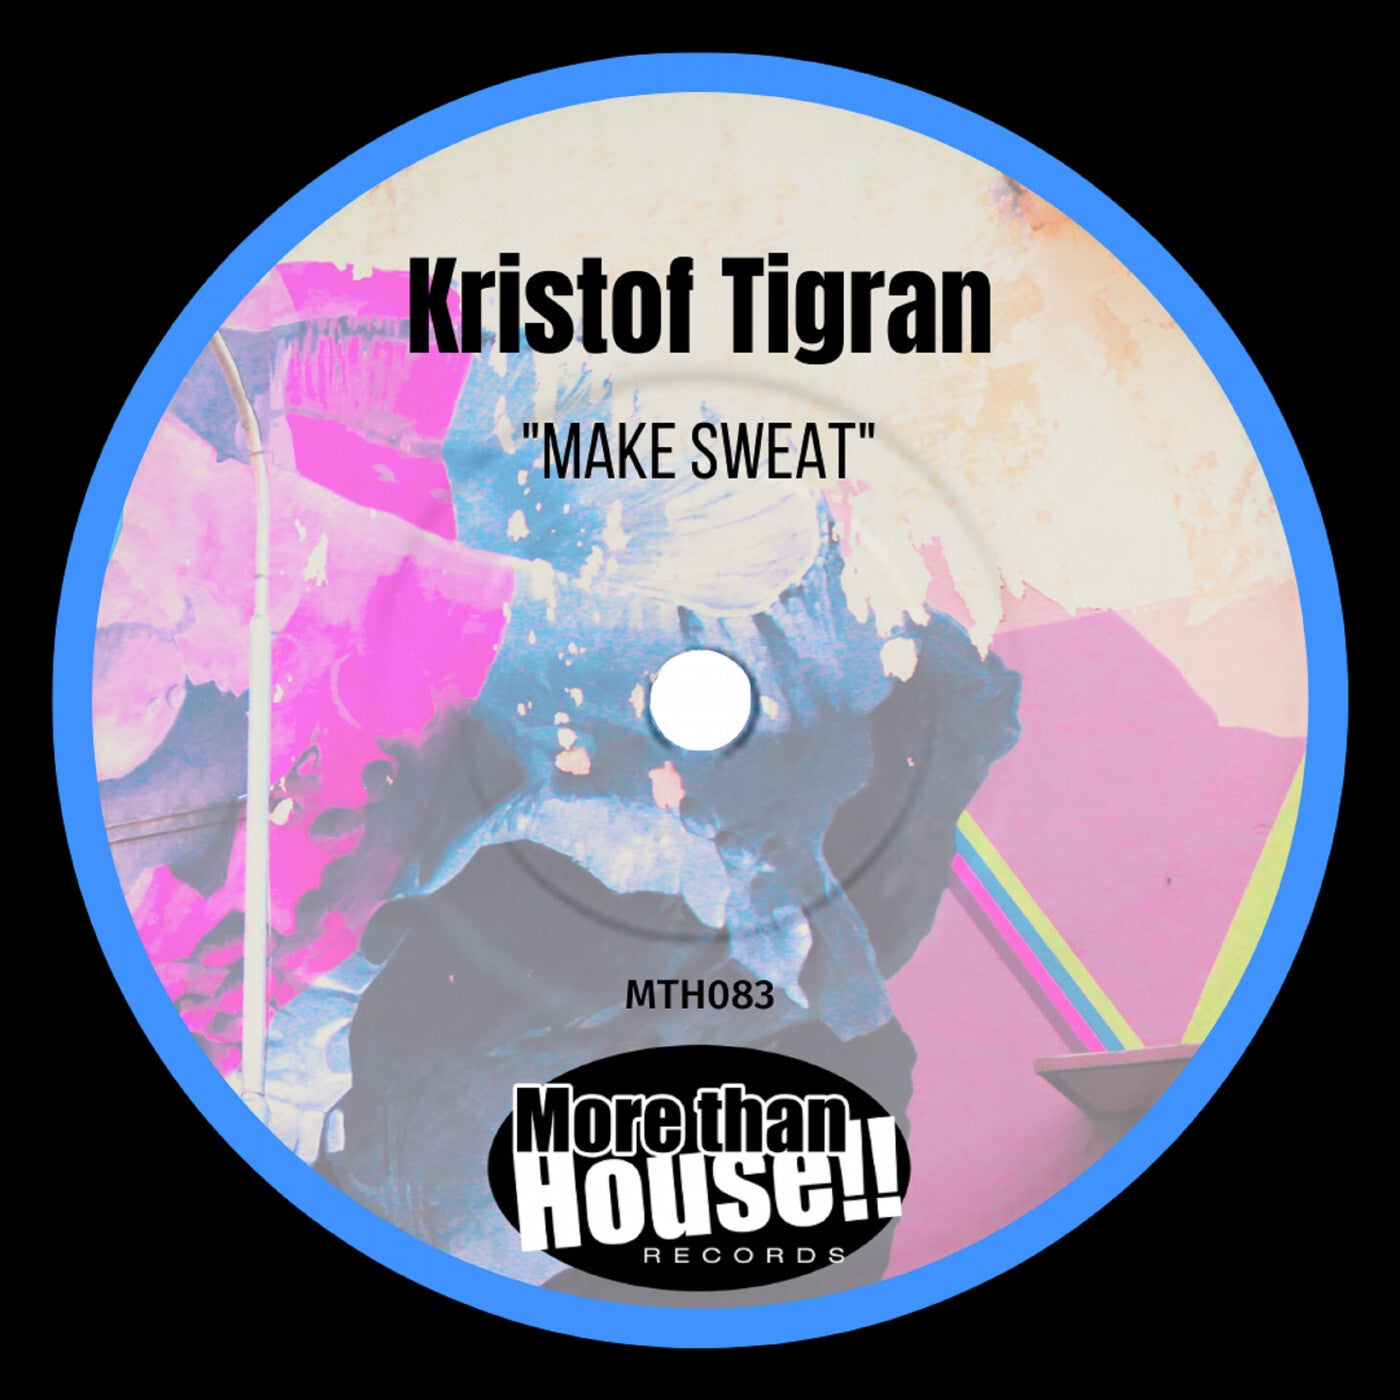 Download Kristof Tigran - Make Sweat on Electrobuzz